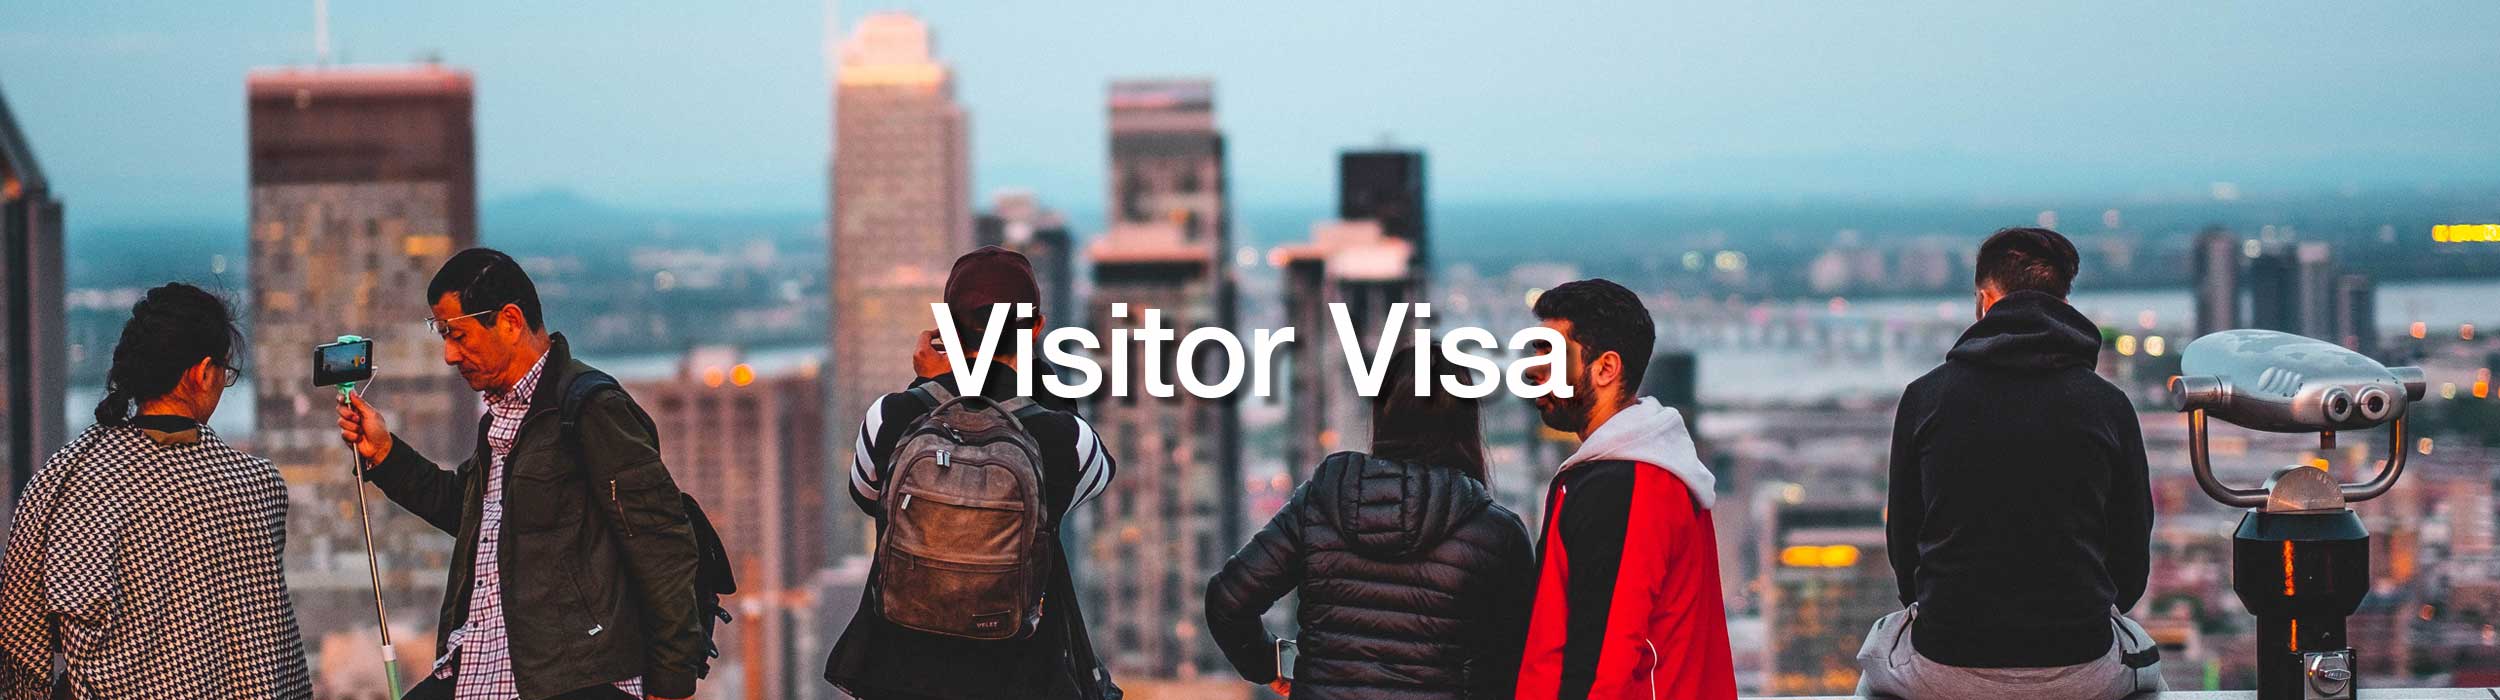 DJP Immigration Services-Visitor Visa